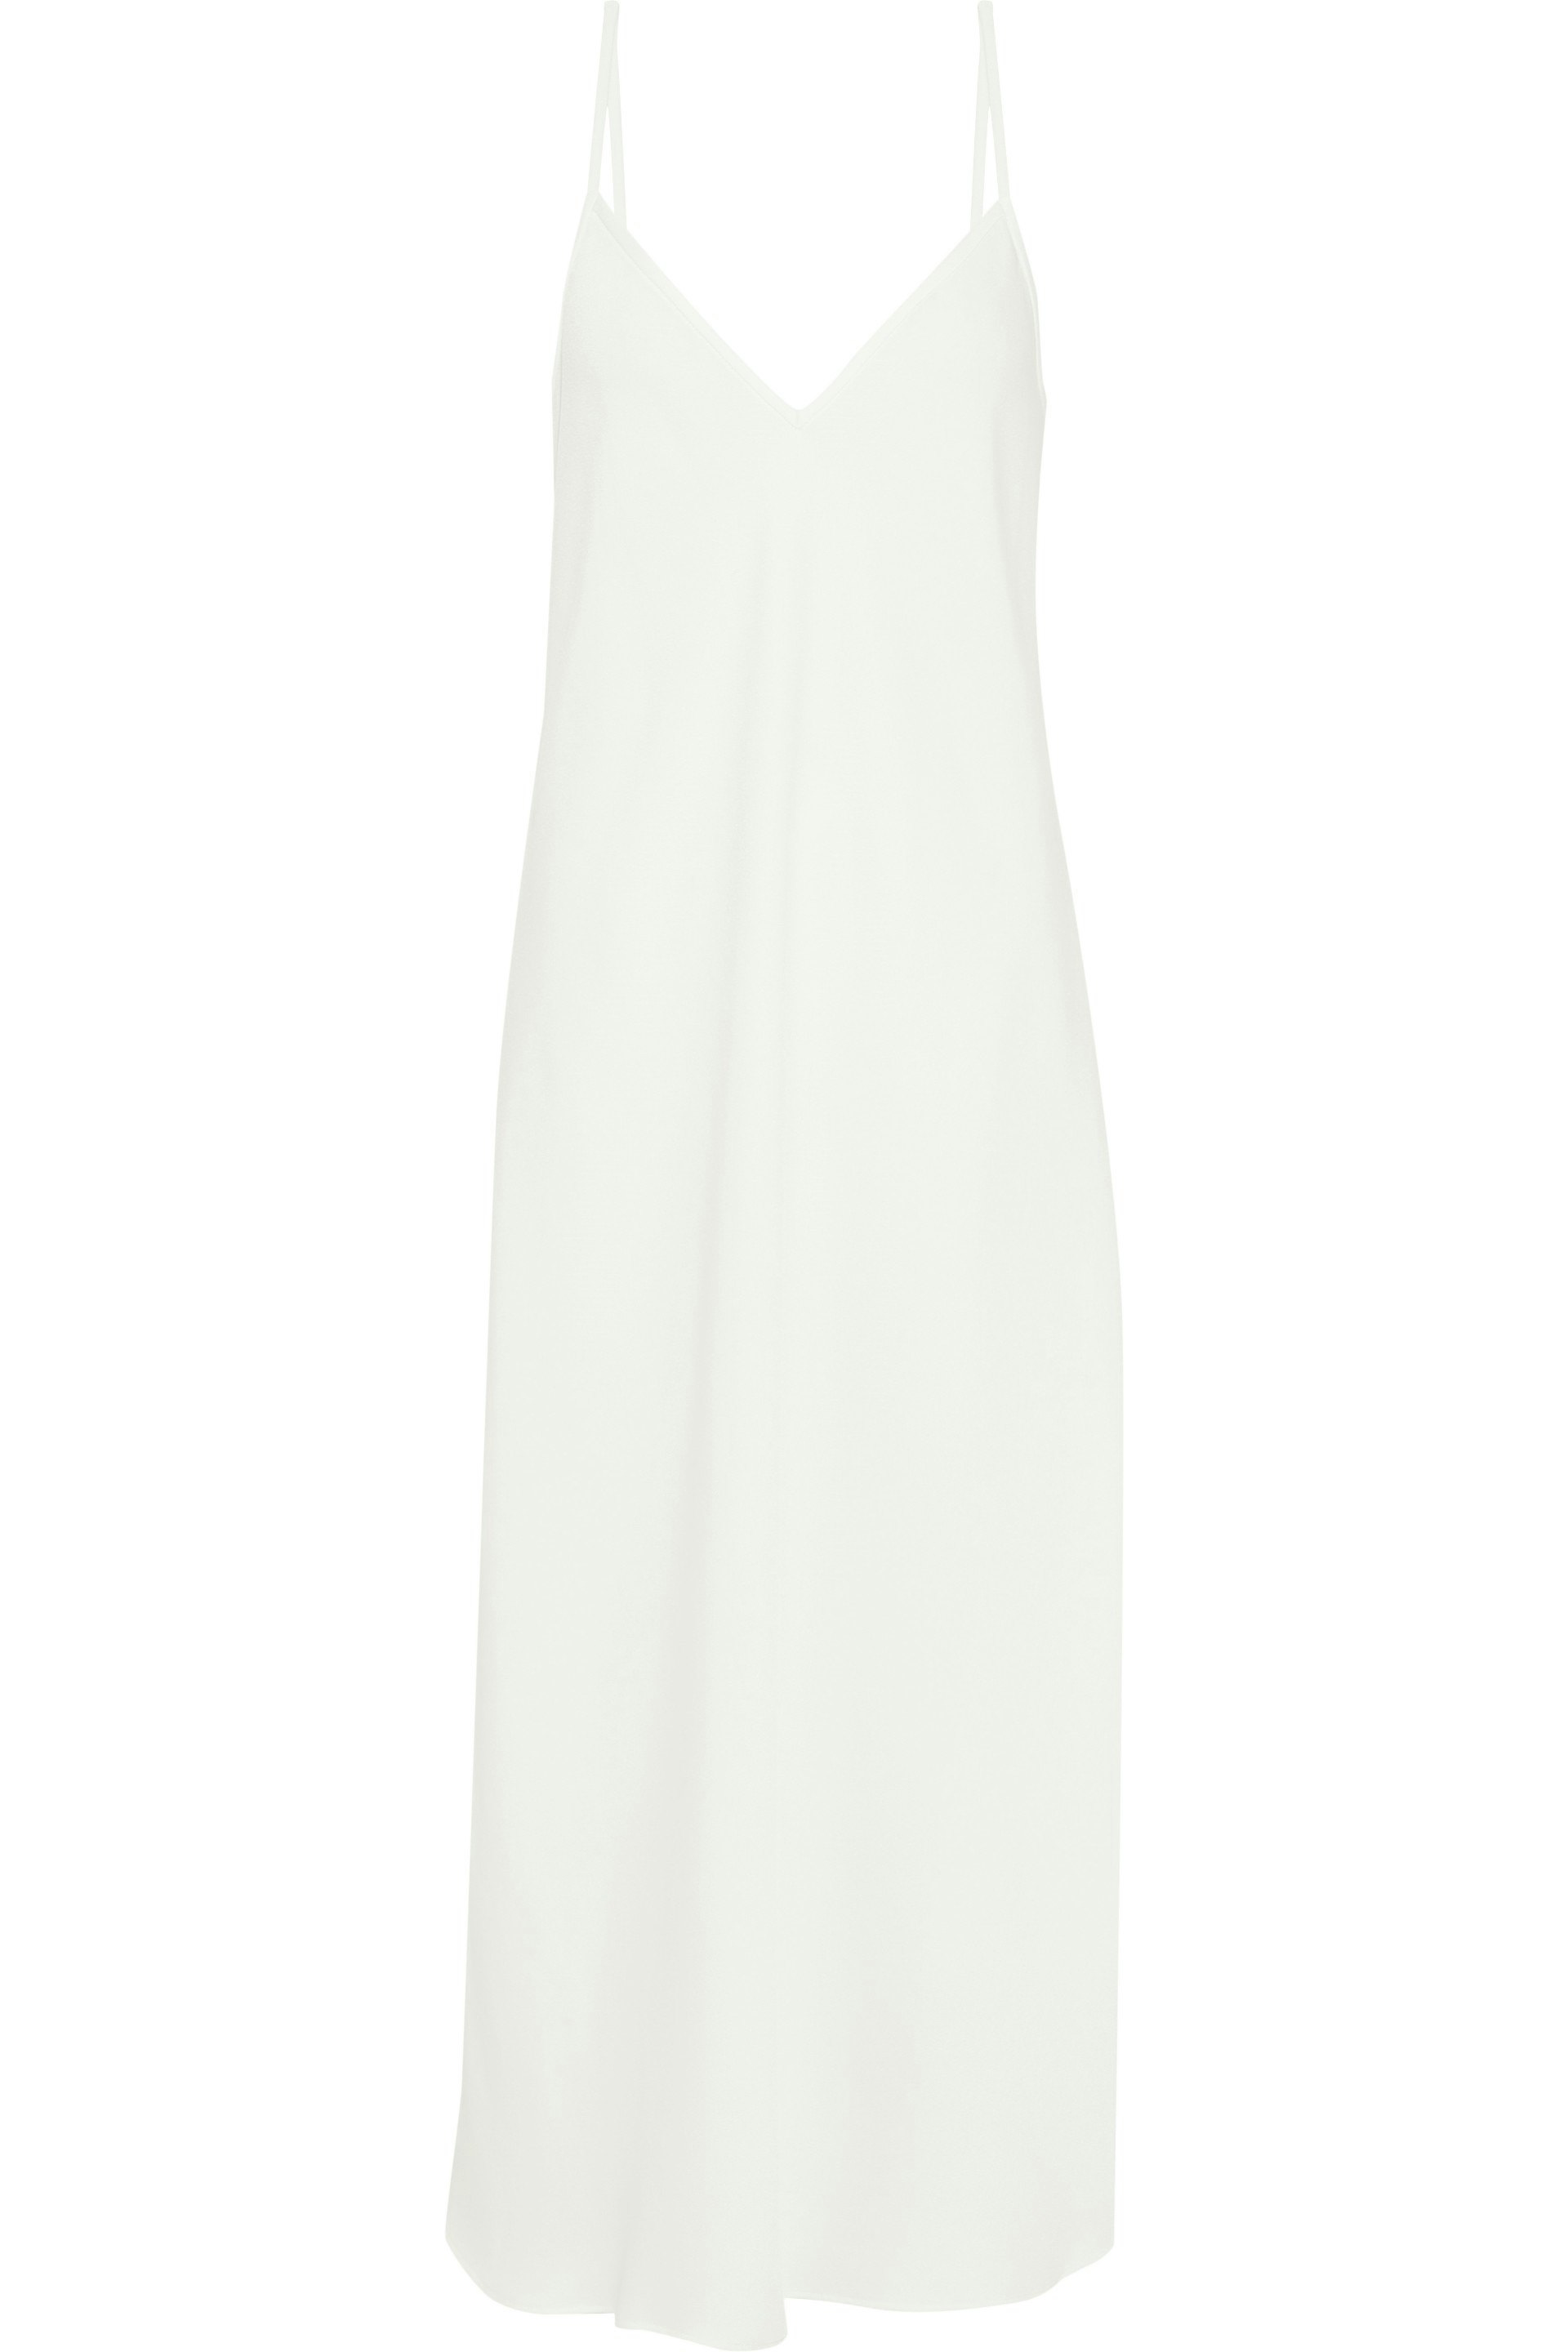 plain white slip dress